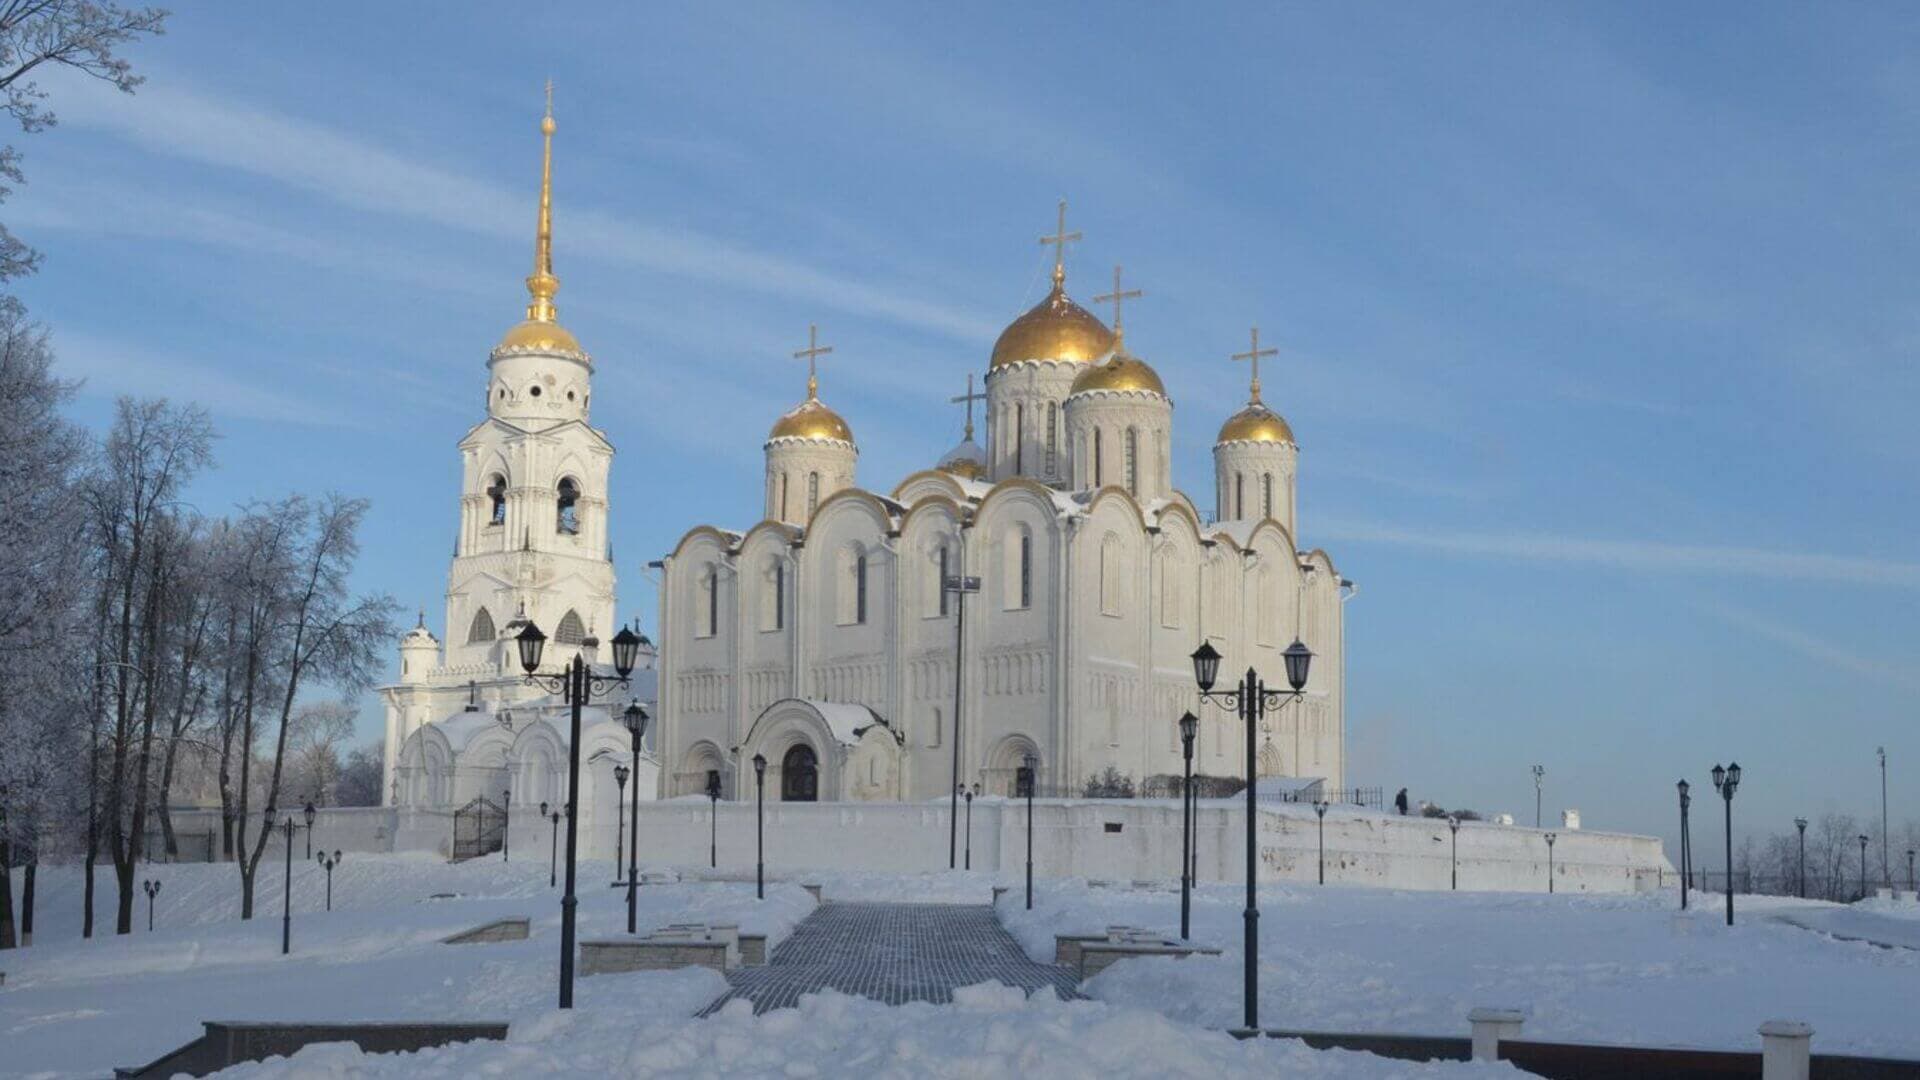 Наследие Владимира и Боголюбово — главные православные монастыри и храмы